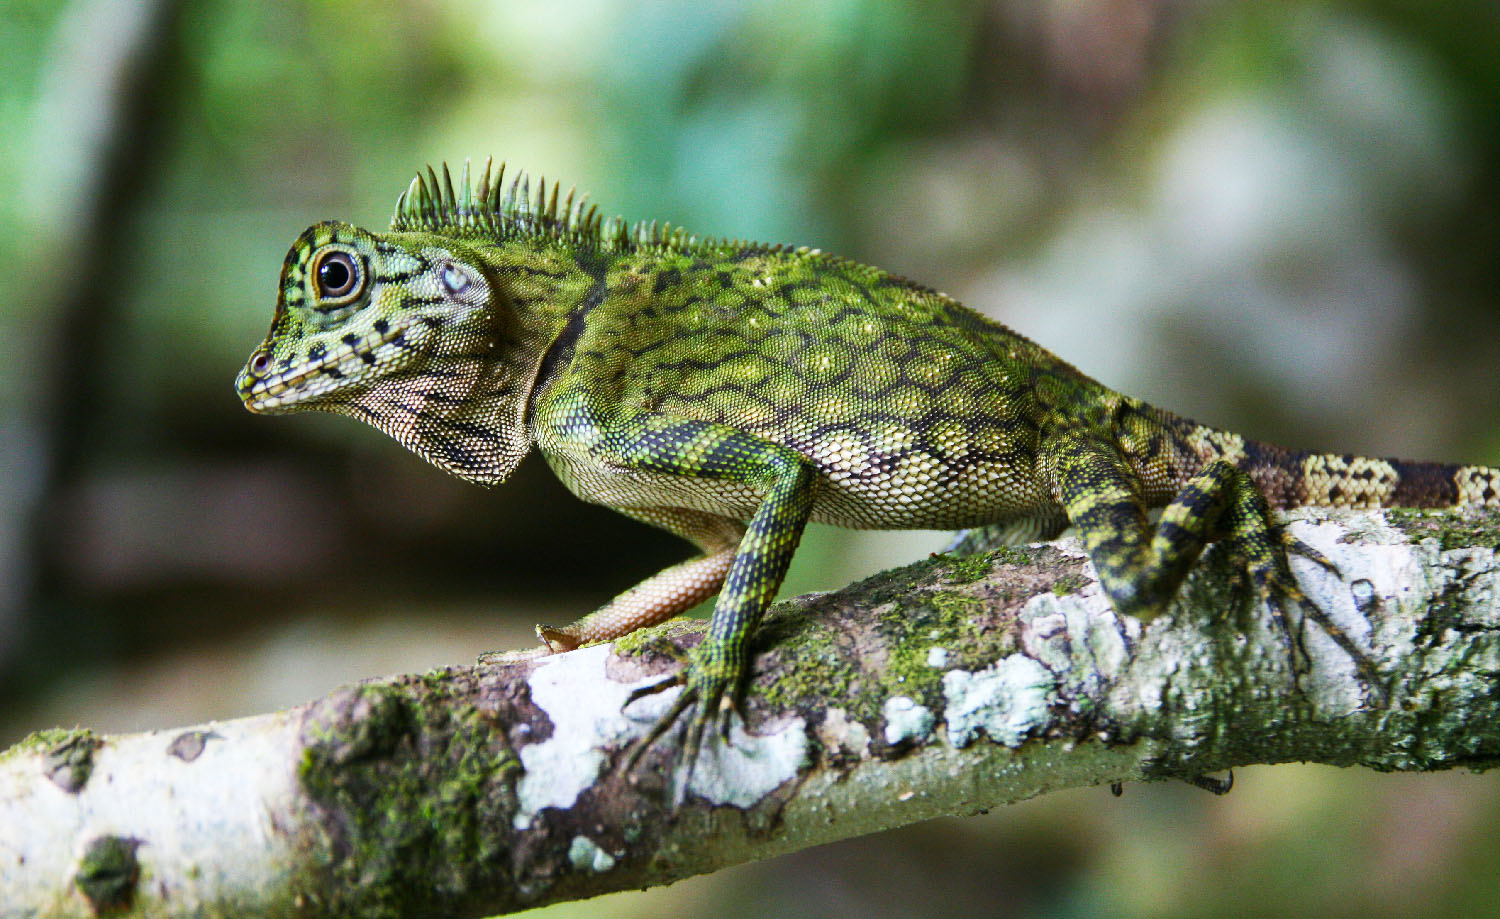 lizard of Tawau Hills Park